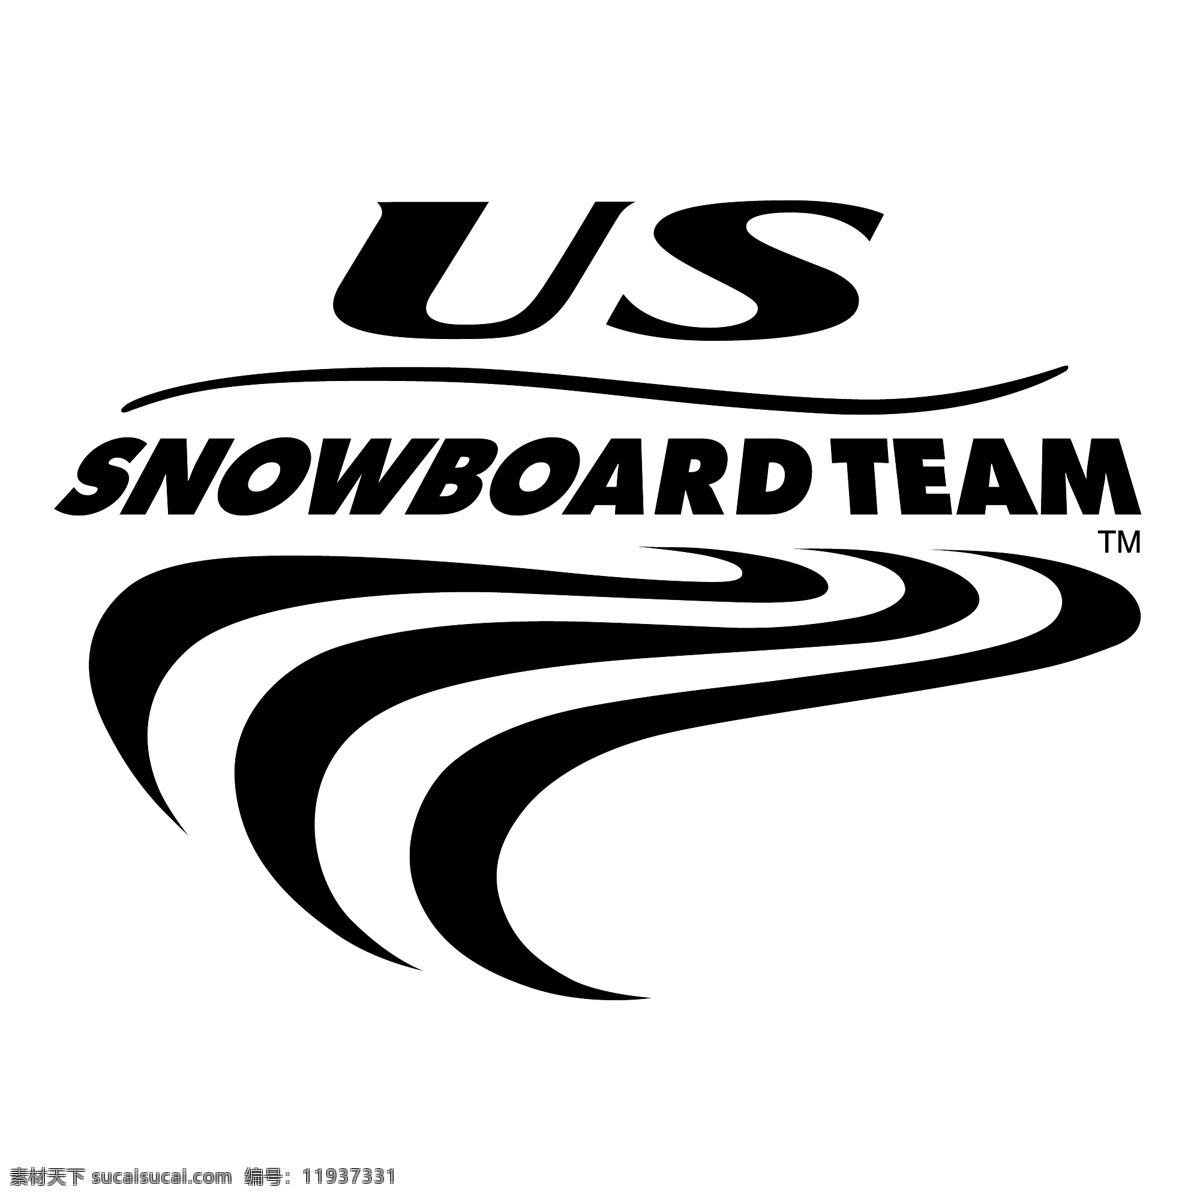 美国滑雪队0 队 我们 我们的团队 单板滑雪 滑雪队 美国滑雪队 矢量 美国 滑雪 载体 团队 我们团队 矢量矢量 我们免费下载 矢量图 建筑家居